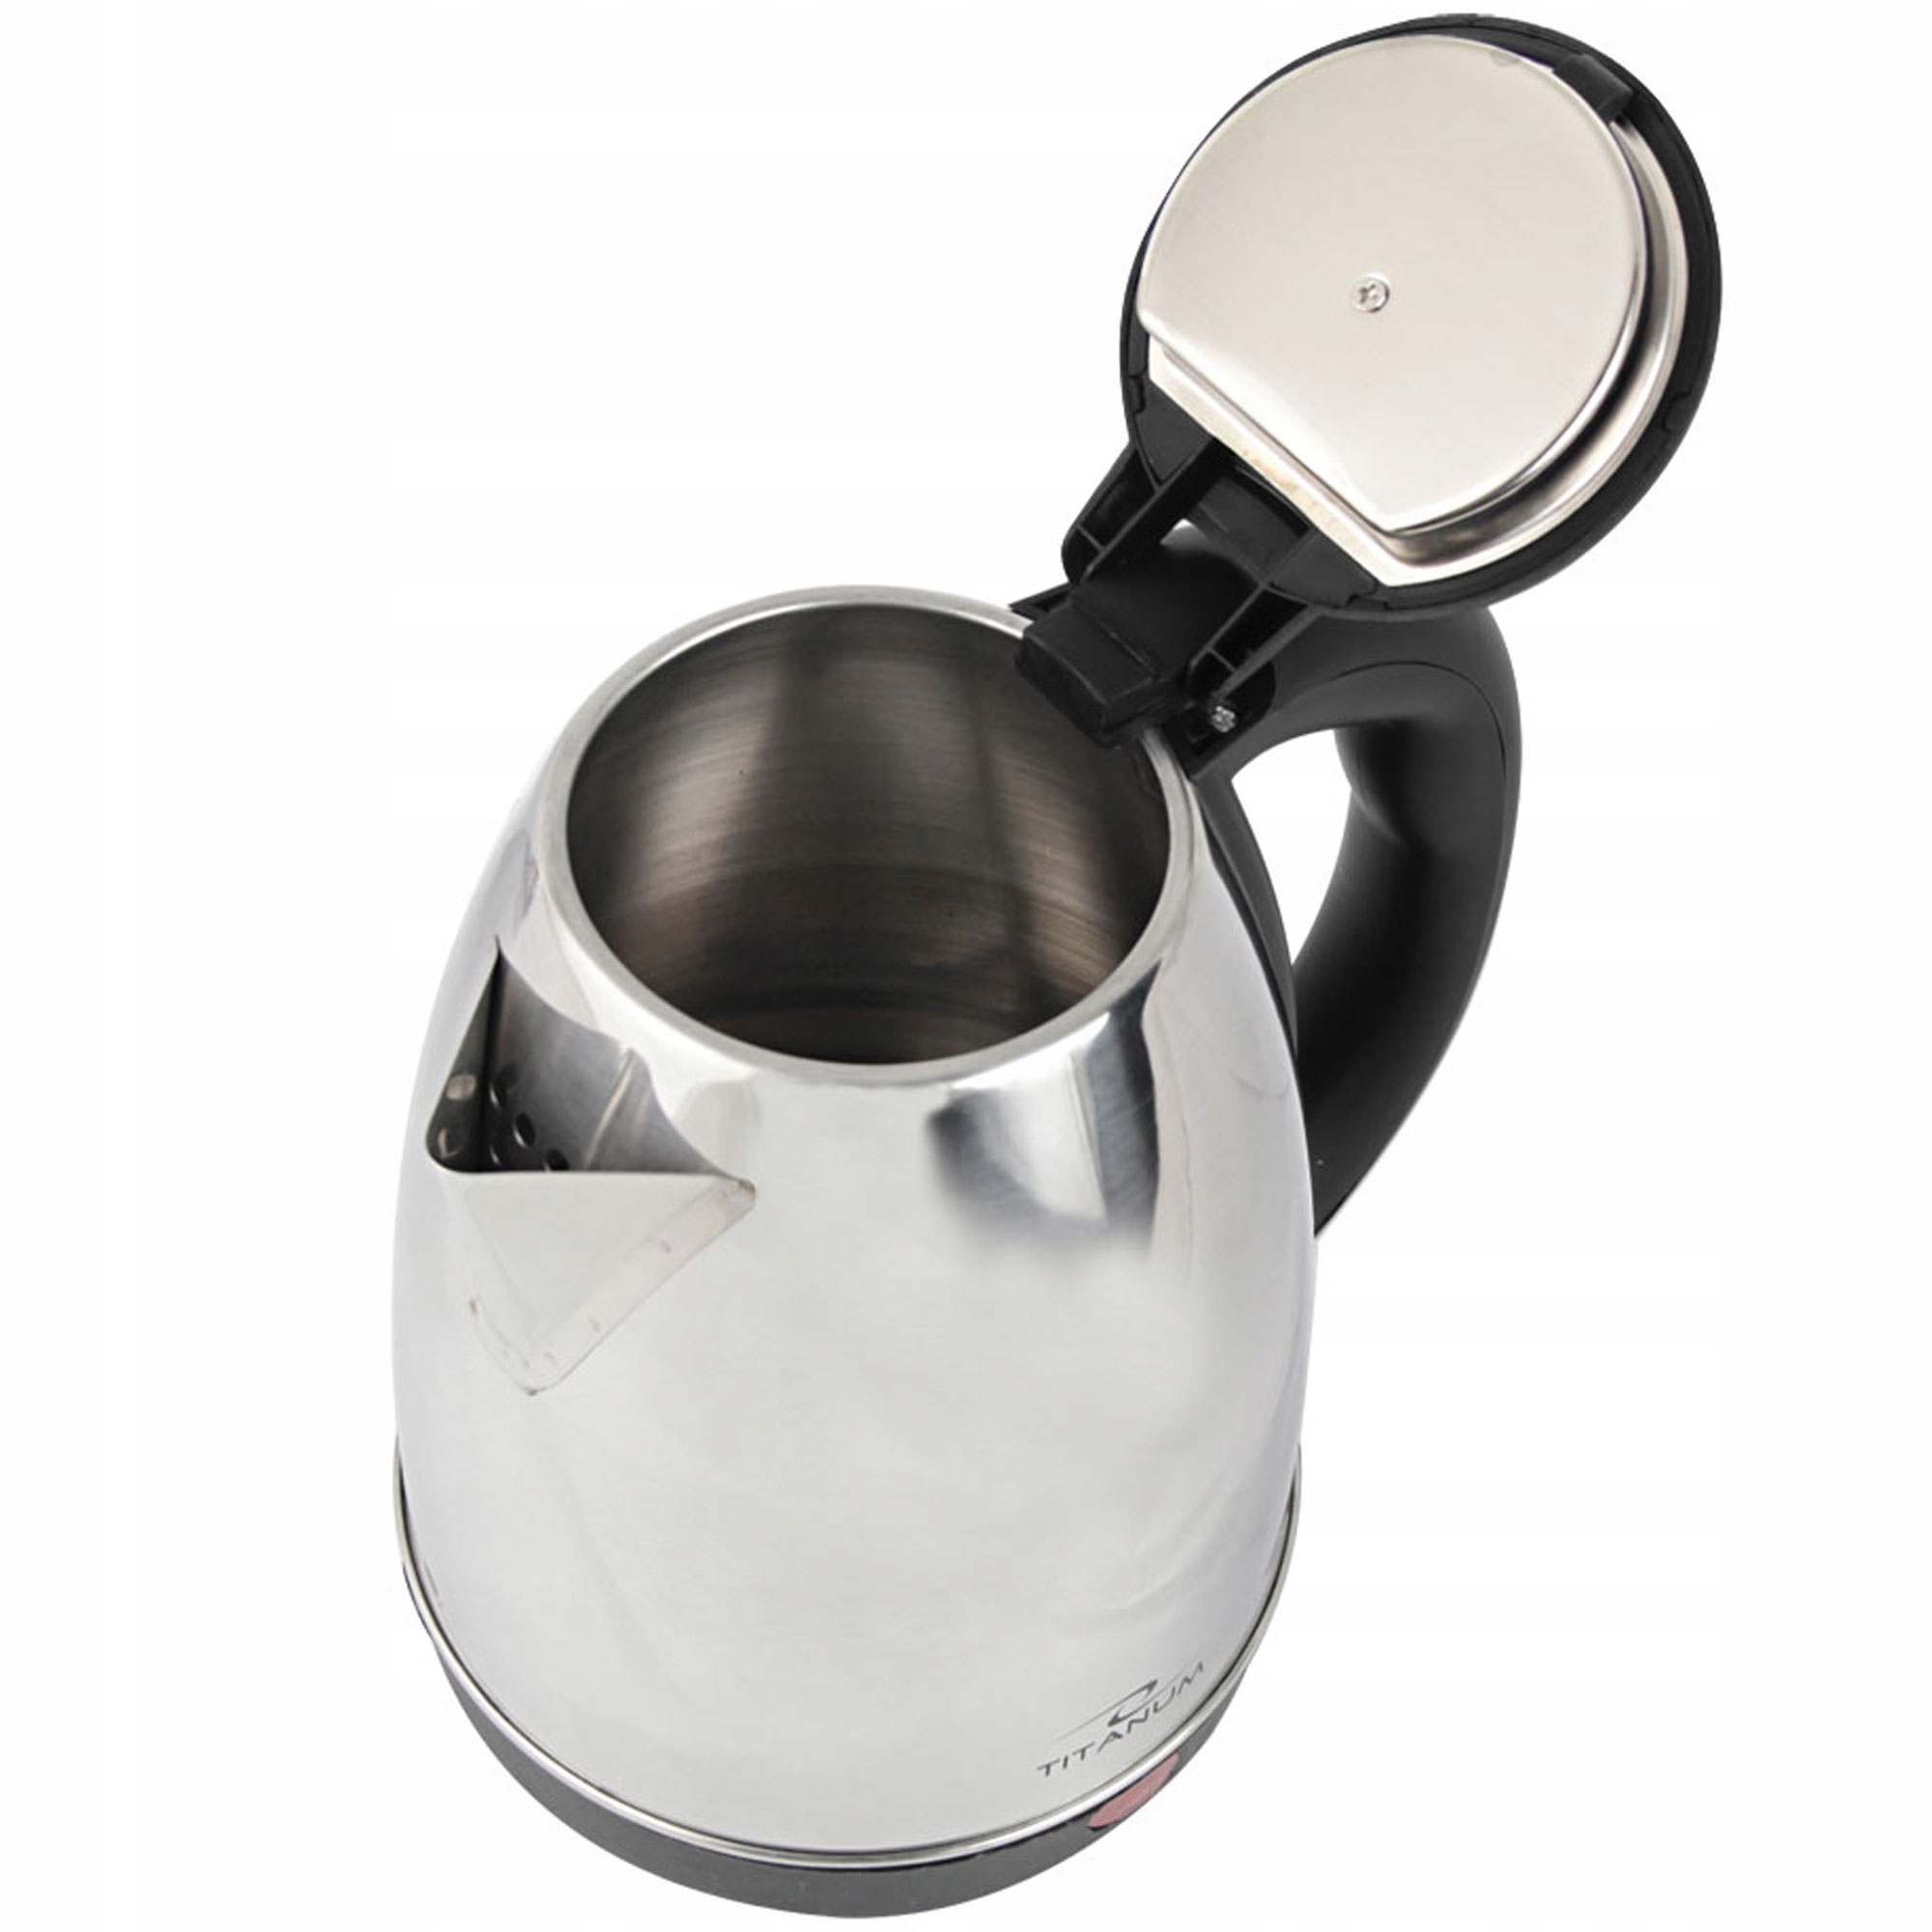 Электрический чайник беспроводной 1.8 L 1800W INOX цвет доминирующий серебристый / серый